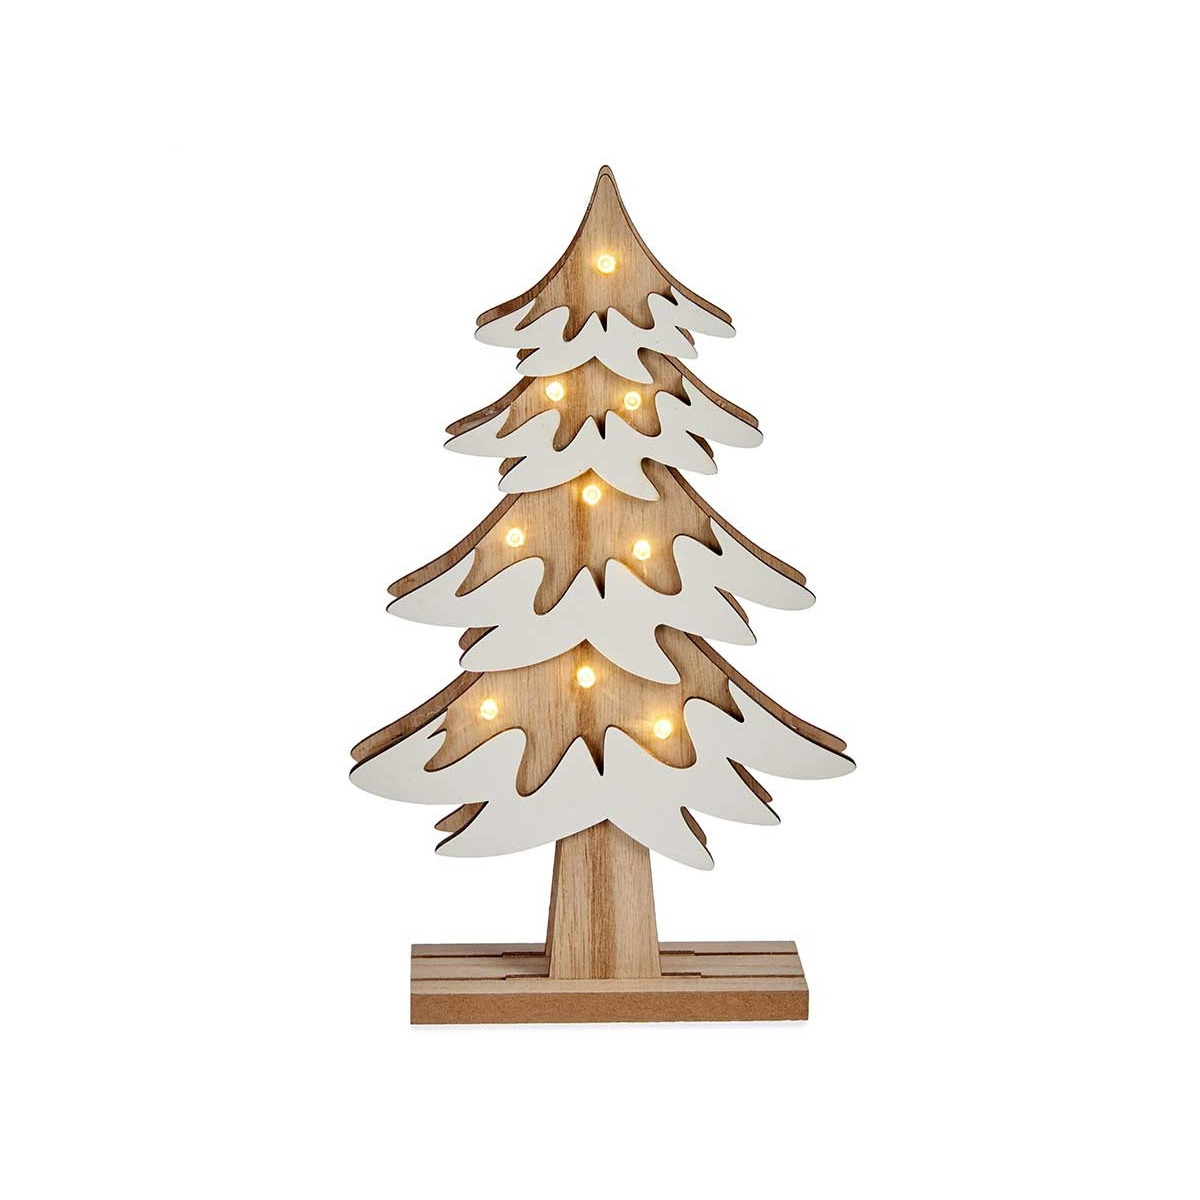 Houten kerstboompje decoratie van 25 cm met LED verlichting